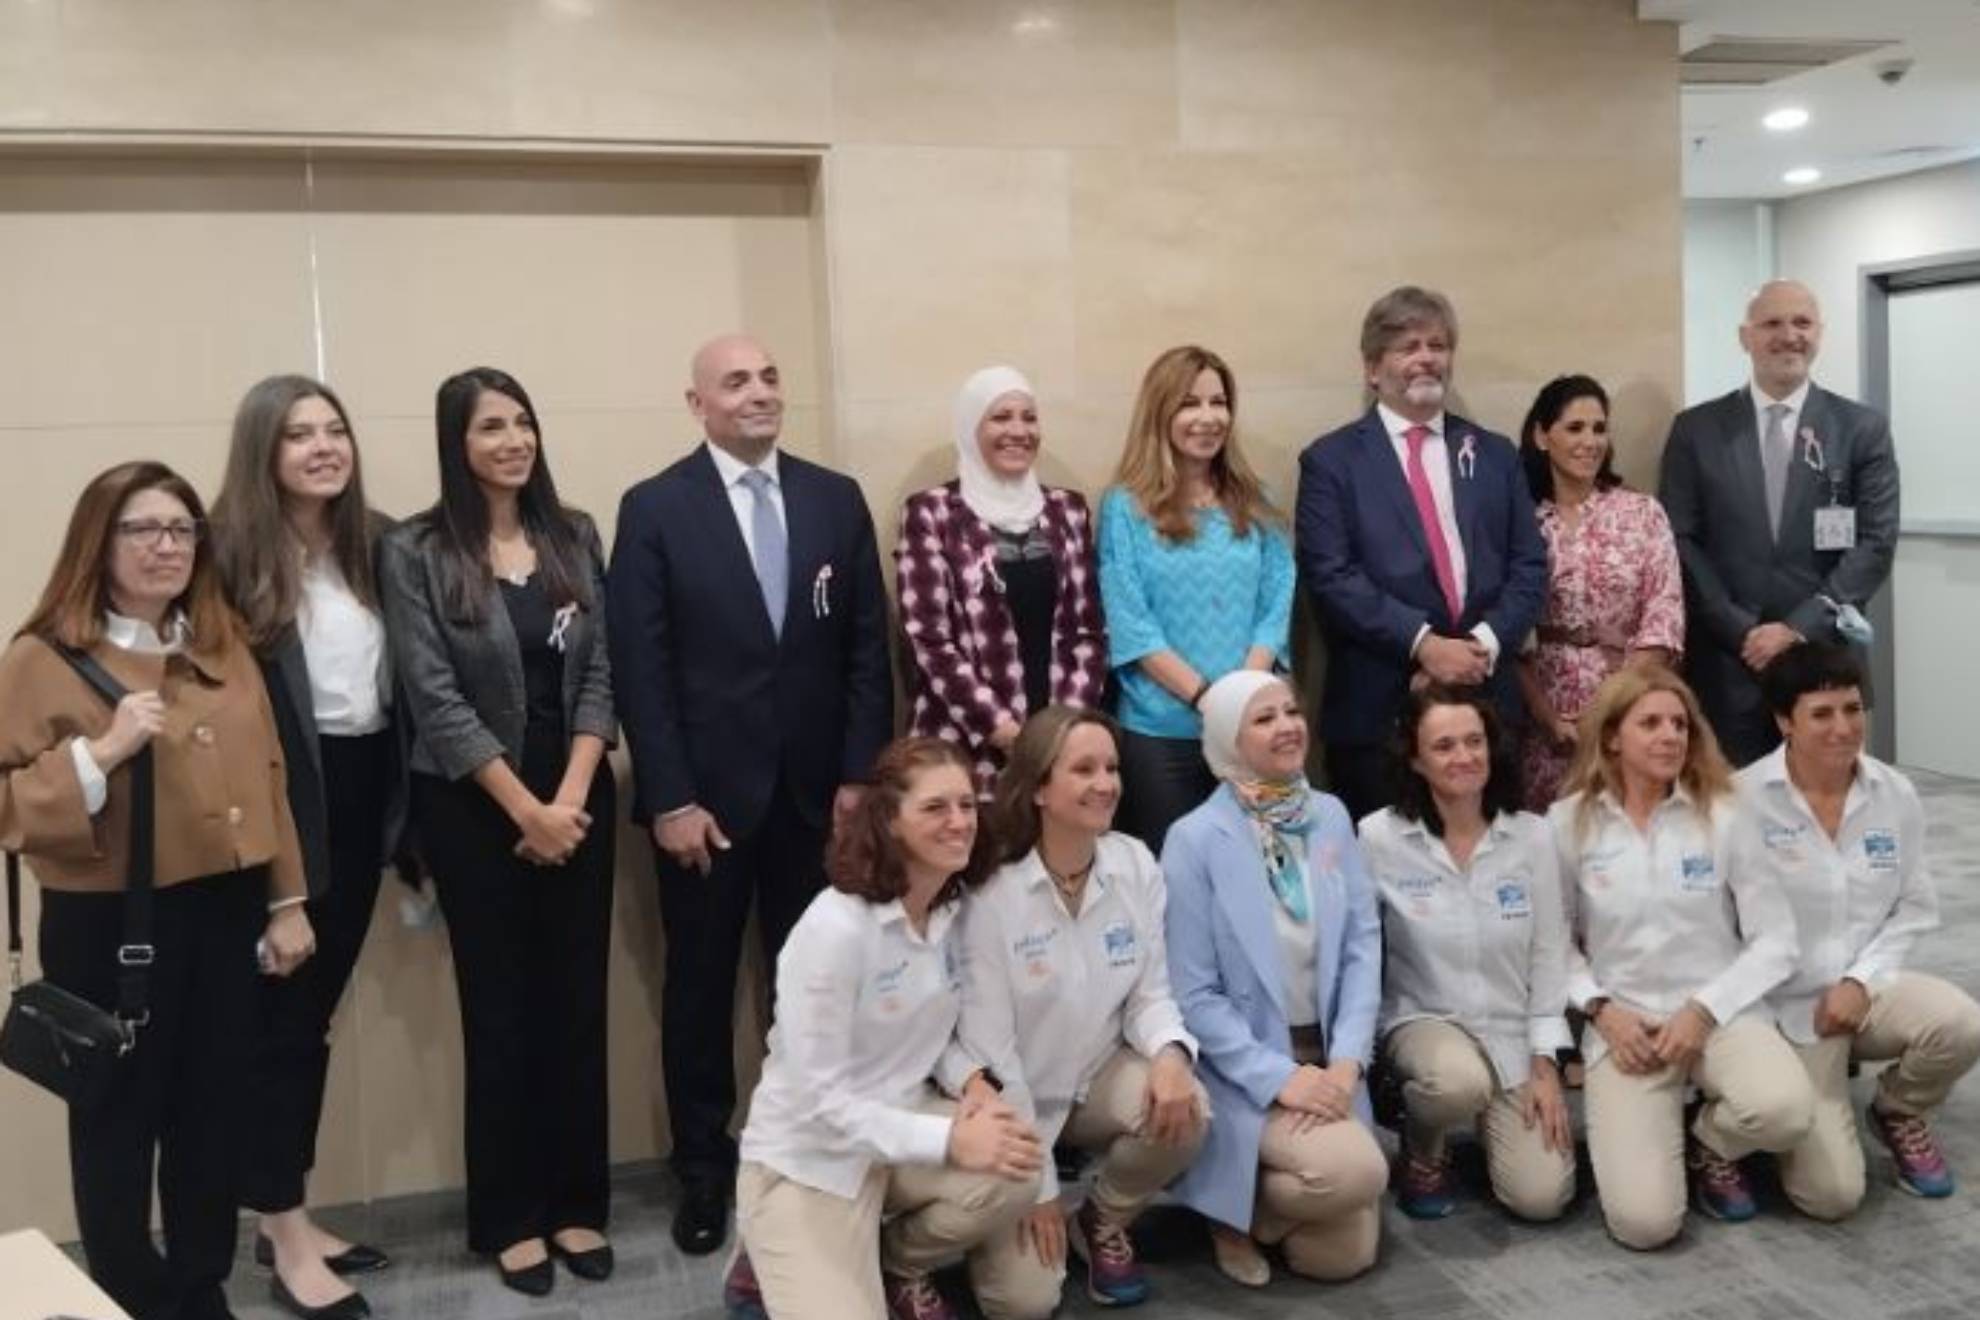 Abajo, de izquierda a derecha Esther, Olga, una dirigente del hospital jordano, Nancy, Pilar y Miriam; arriba, de azul la princesa Guida Talal, y a su lado  el embajador de España en Jordania